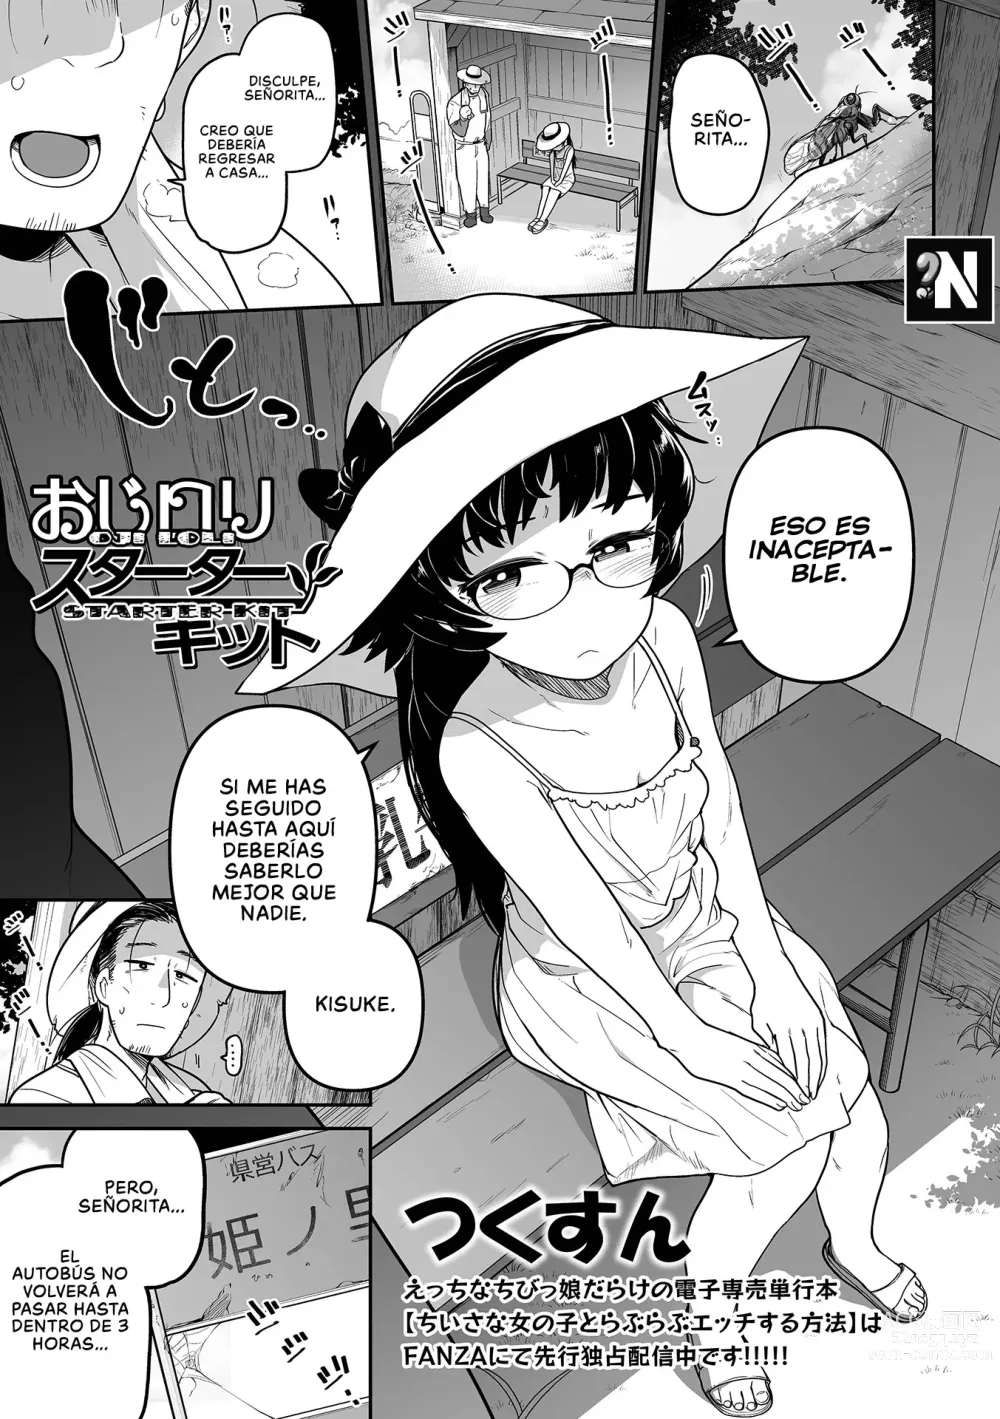 Page 1 of manga Oji Loli Starter Kit